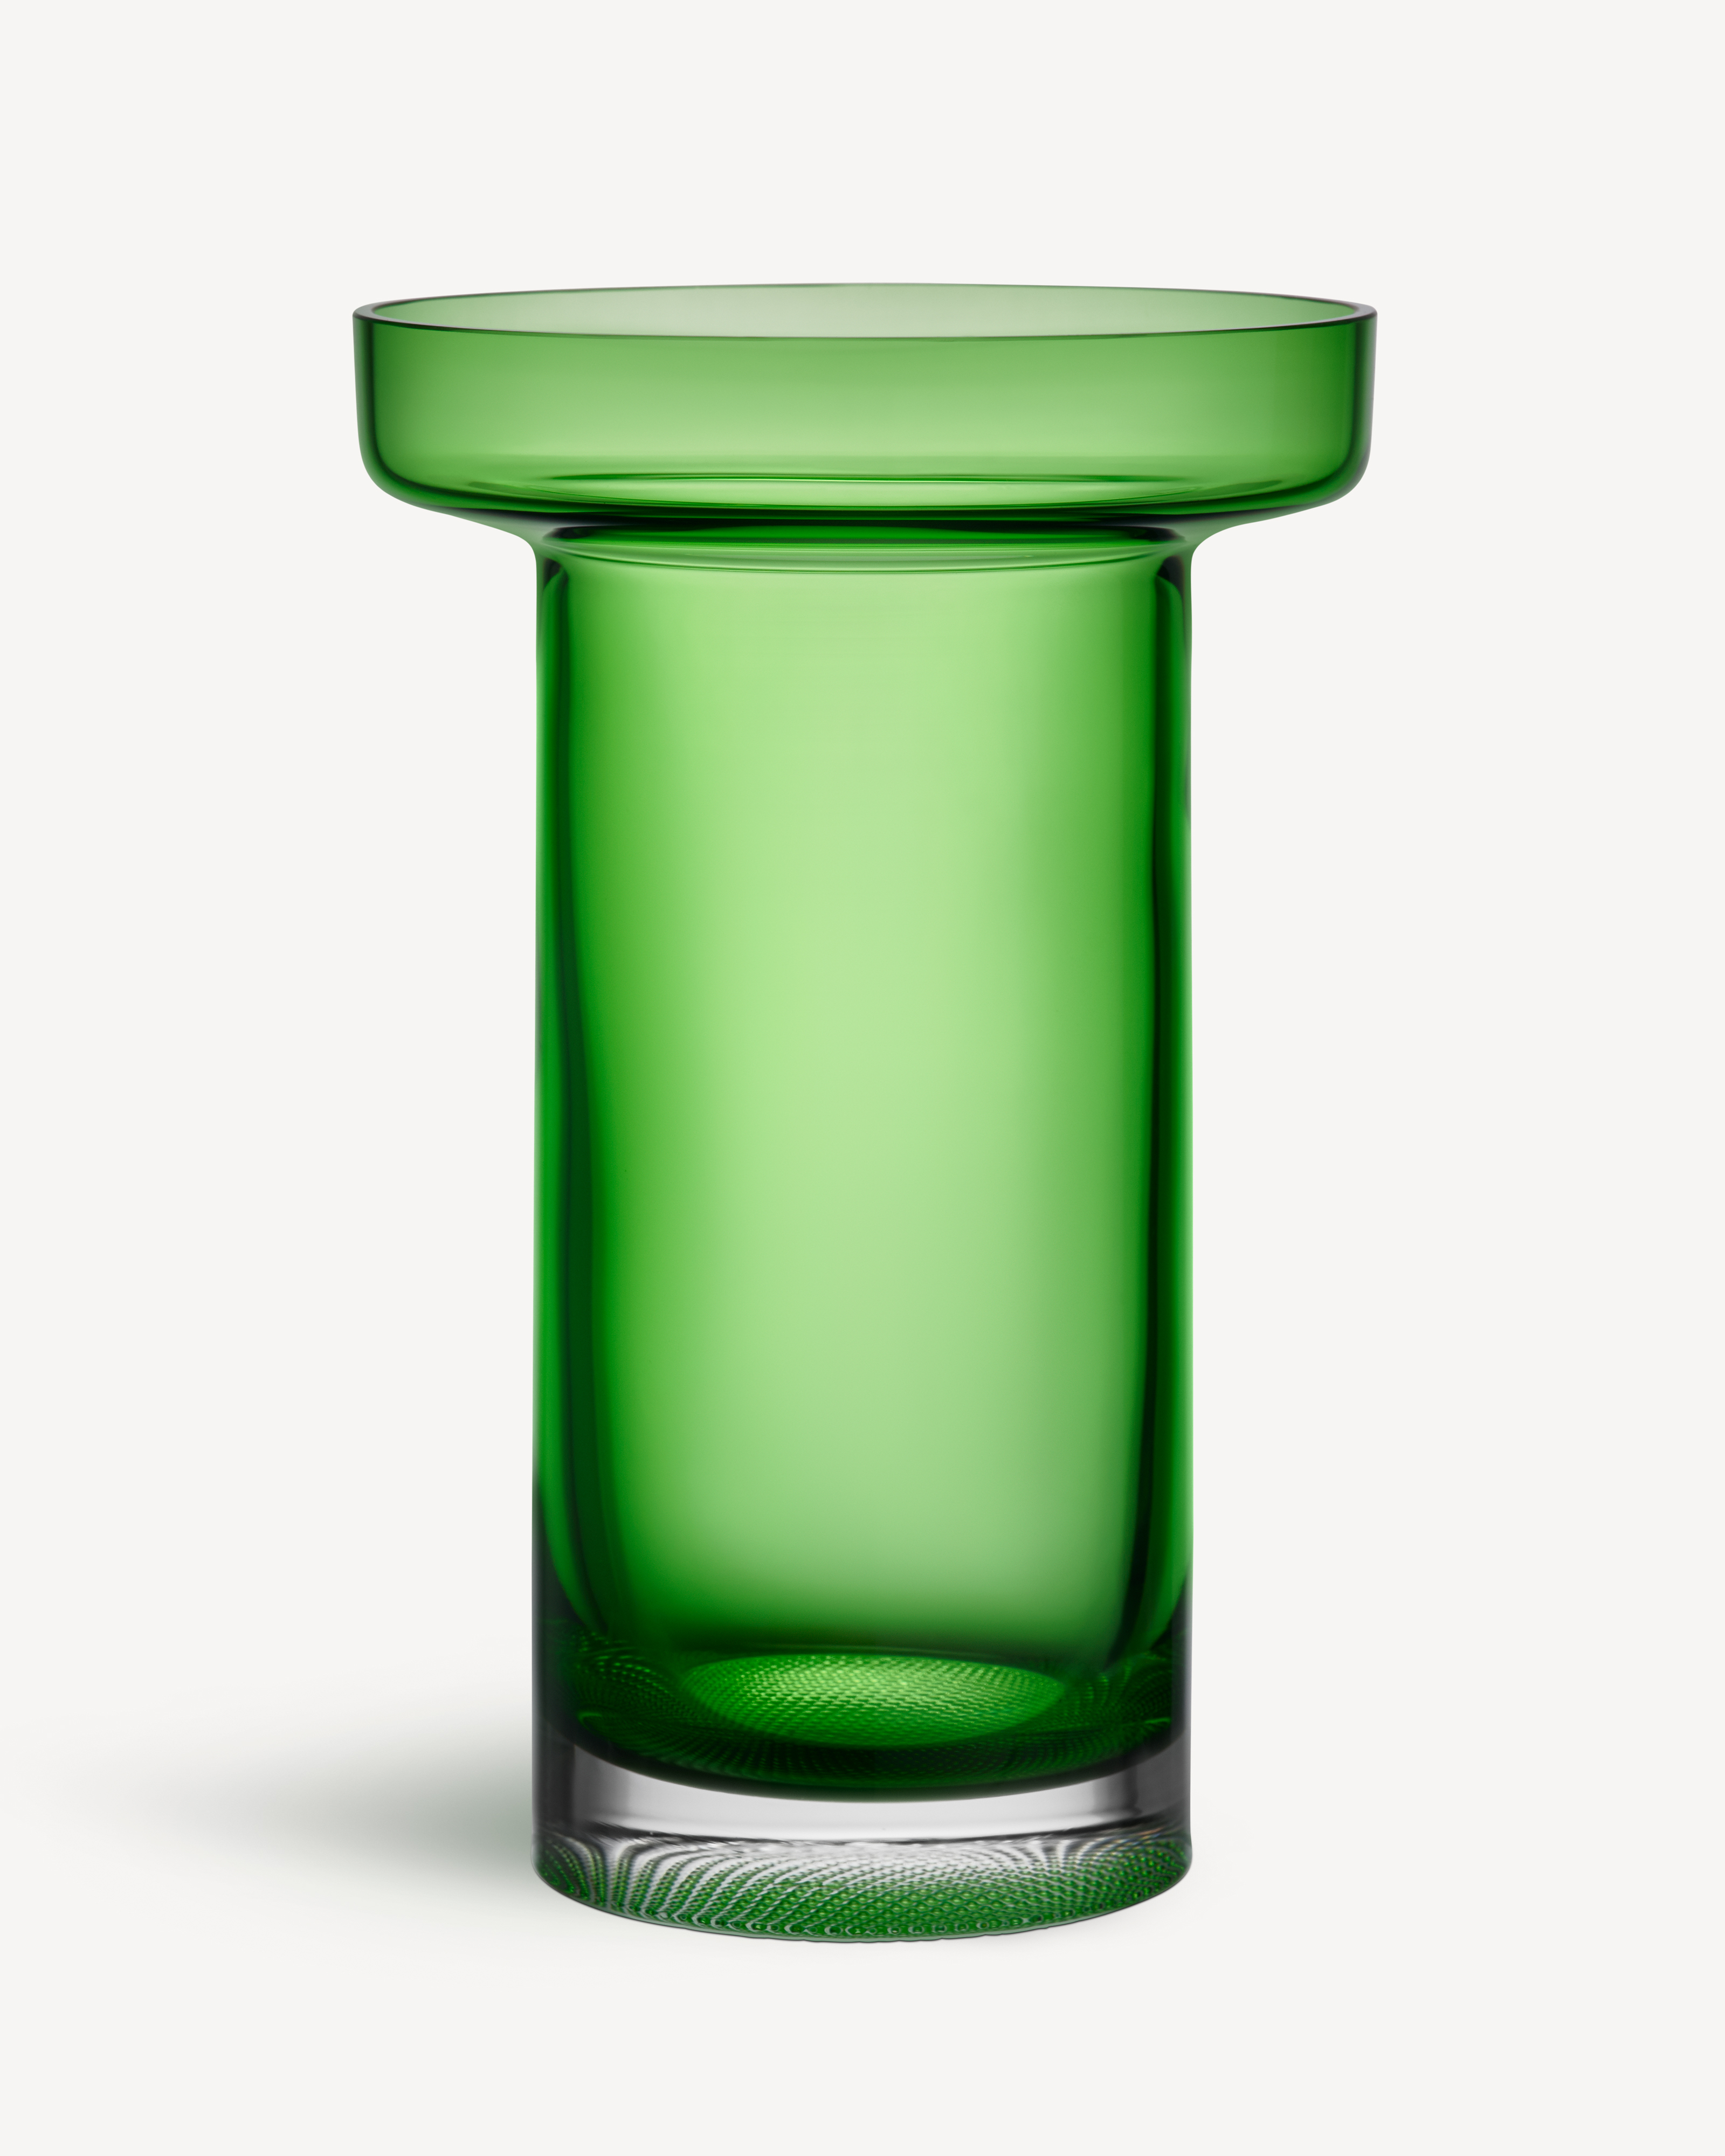 Limelight rose vase green 230mm | Kosta Boda